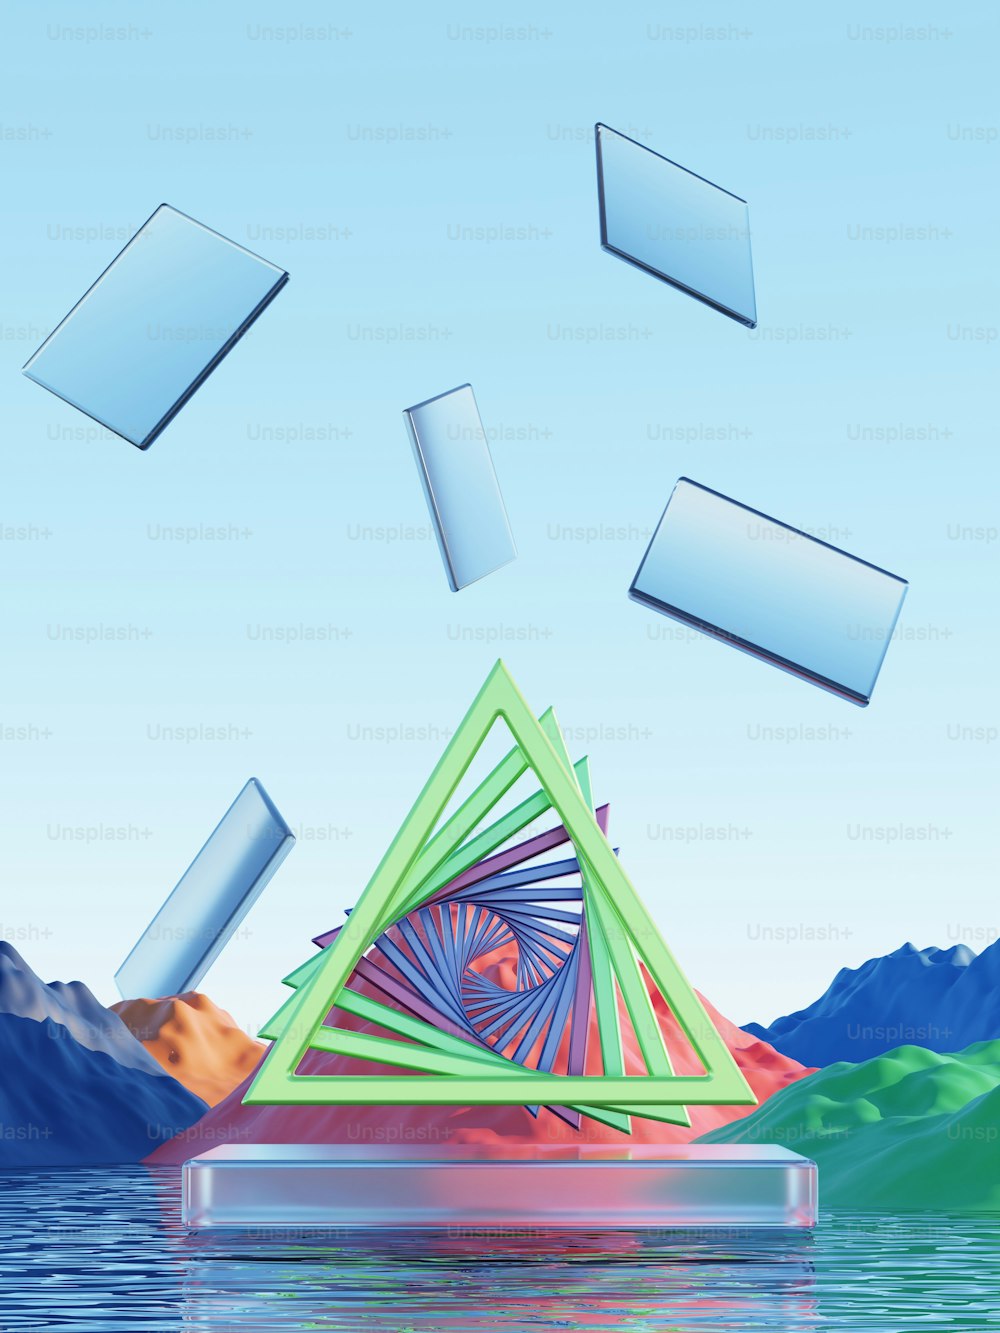 Una imagen generada por computadora de una pirámide flotando en el agua